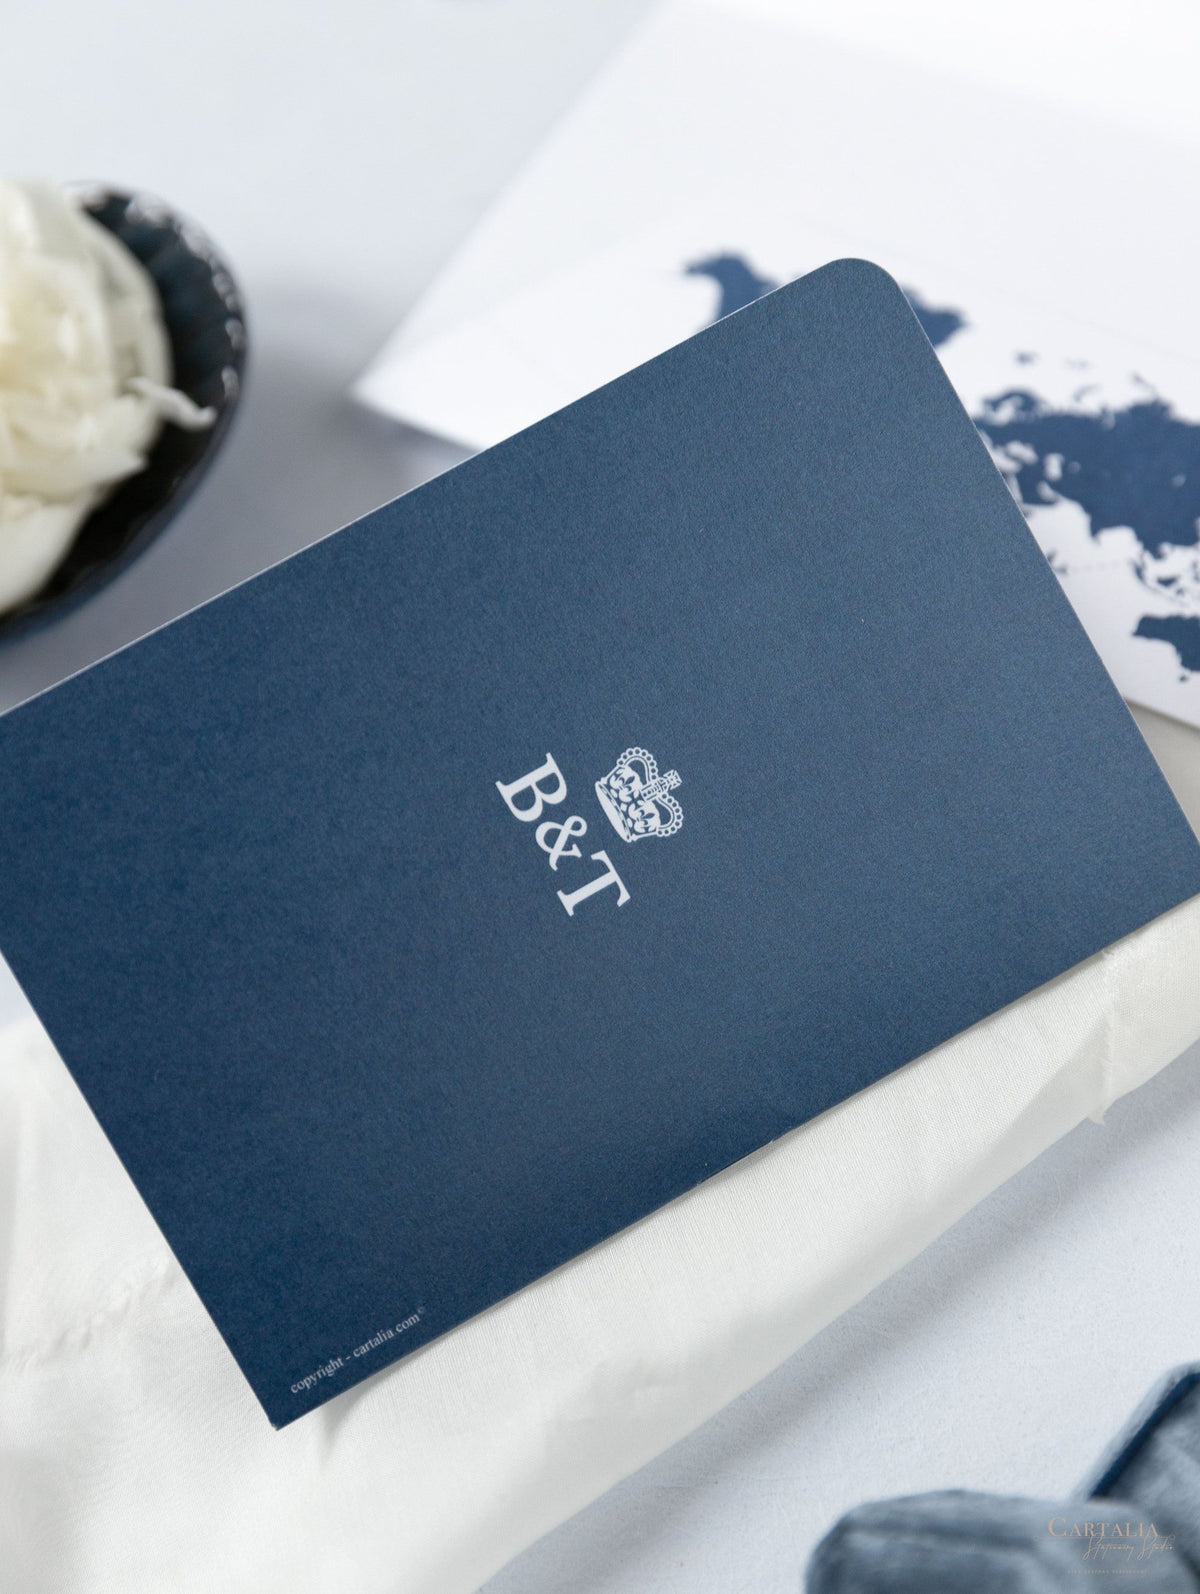 Portafoglio da viaggio FOLDER argento e blu navy: lussuosa suite per inviti per passaporto di nozze in tasca e etichetta a specchio